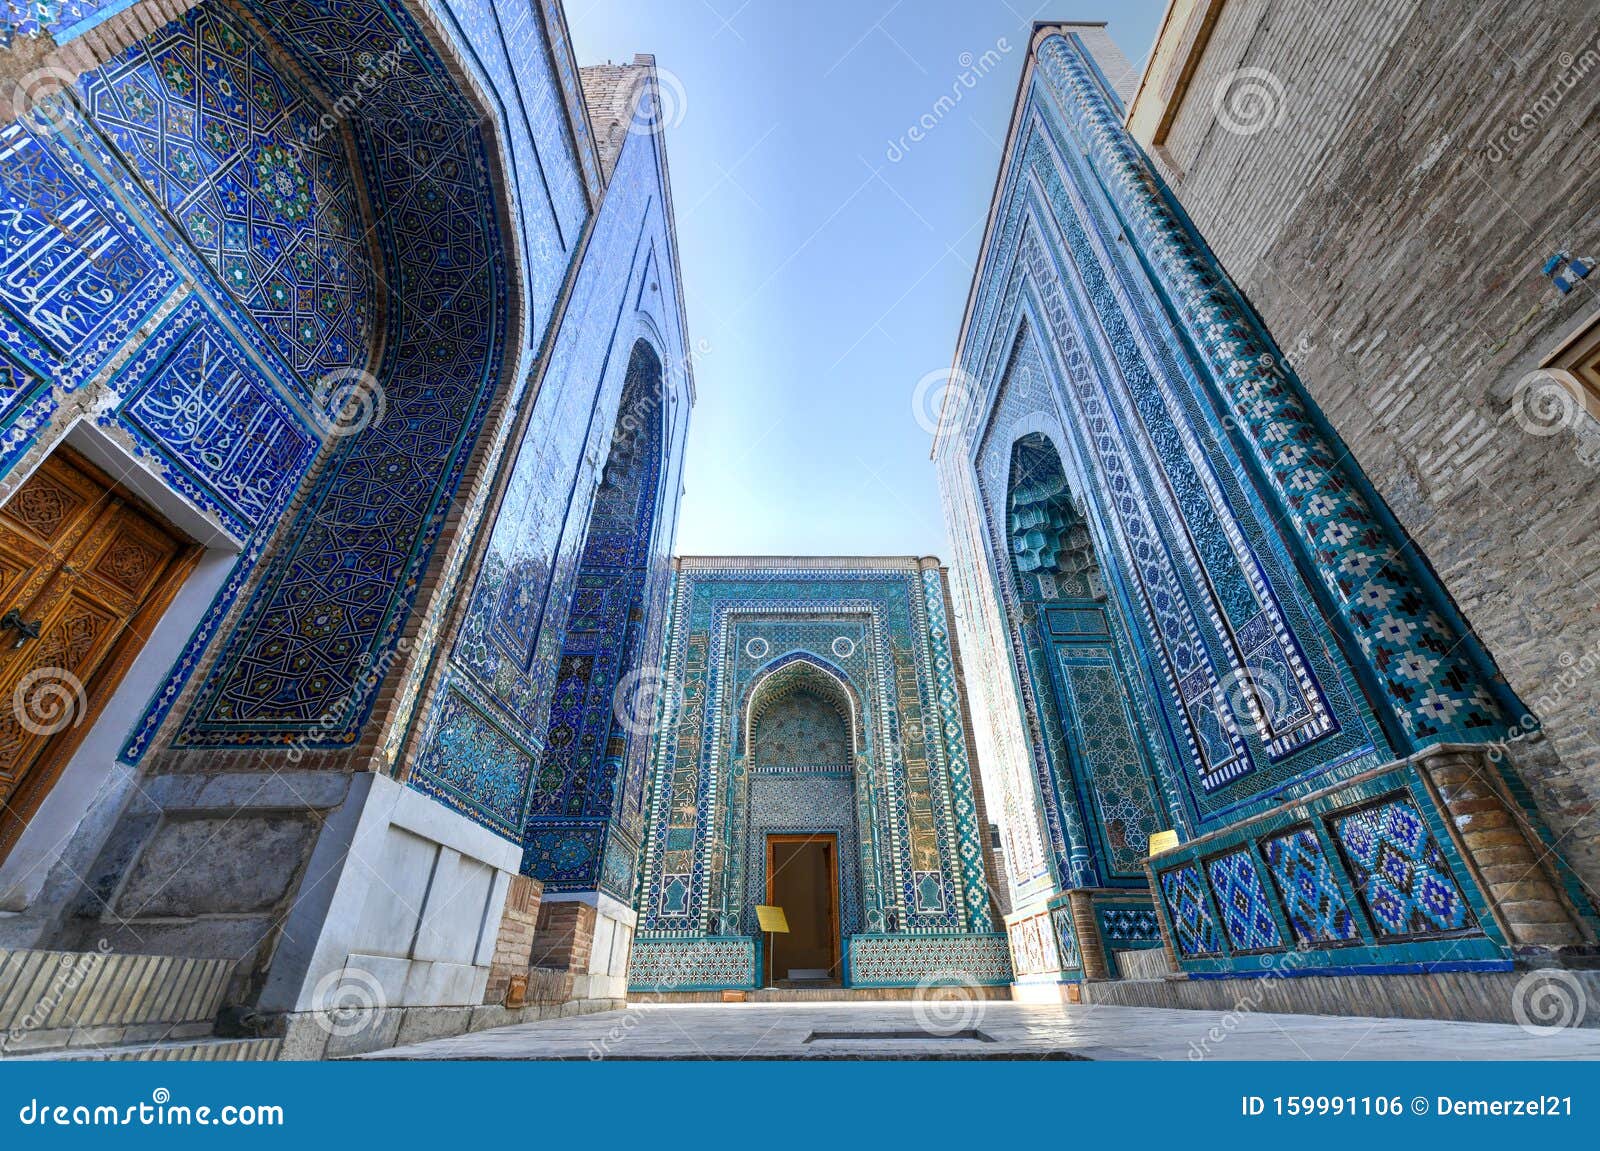 shah-i-zinda - samarkand, uzbekistan